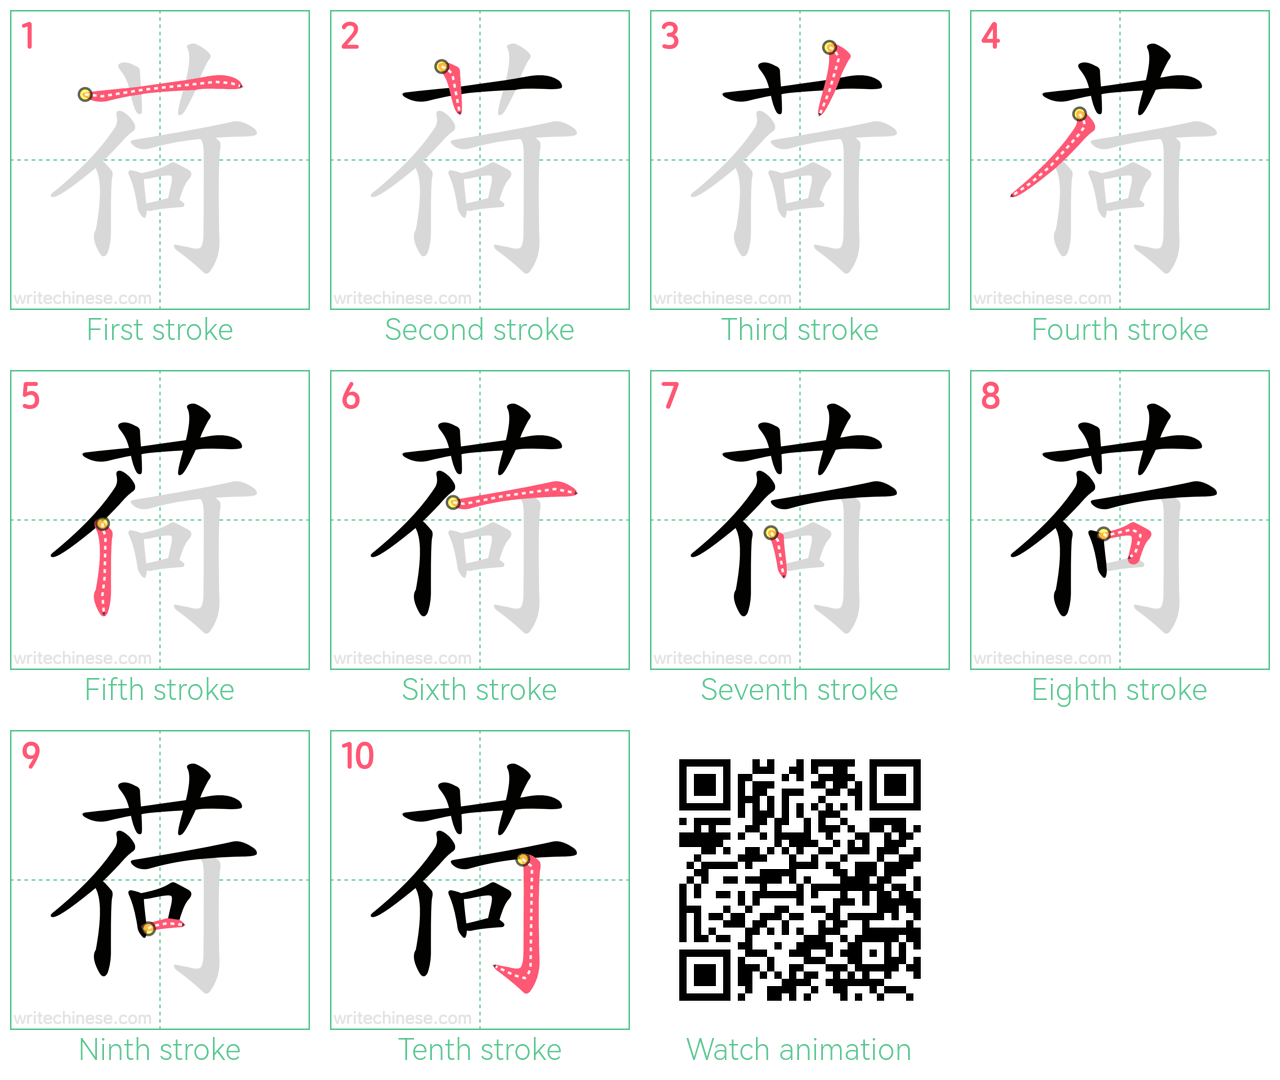 荷 step-by-step stroke order diagrams